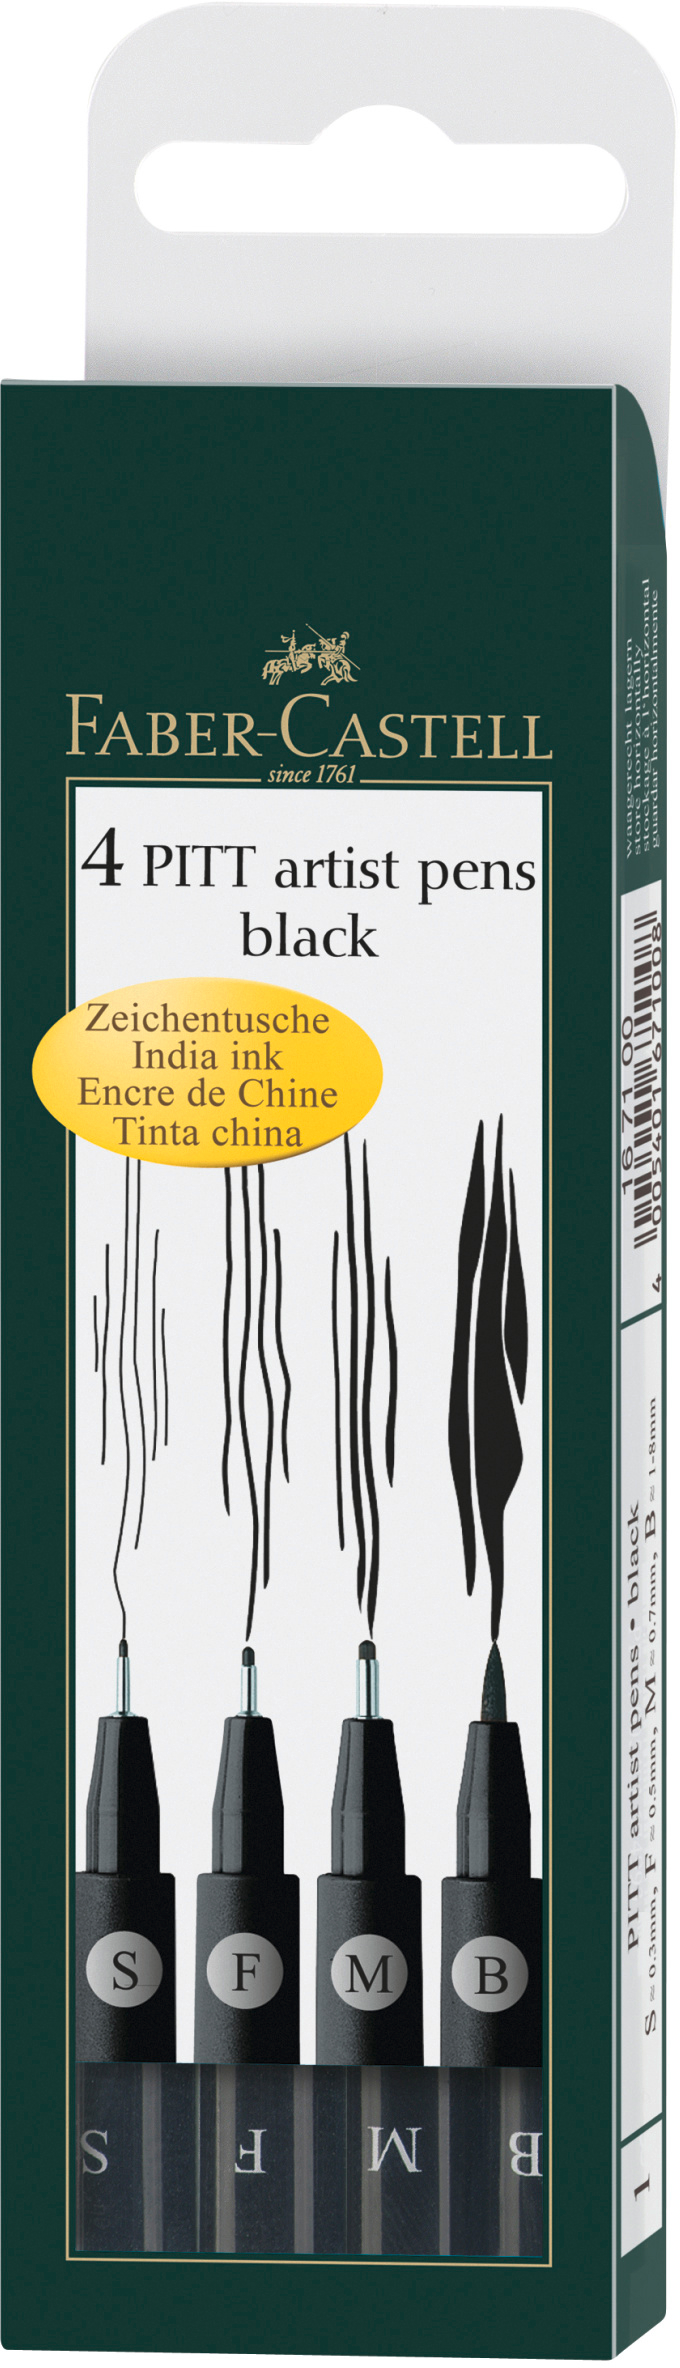 FABER-CASTELL Pitt Artist Pen 167100 noir 4 pcs. noir 4 pcs.